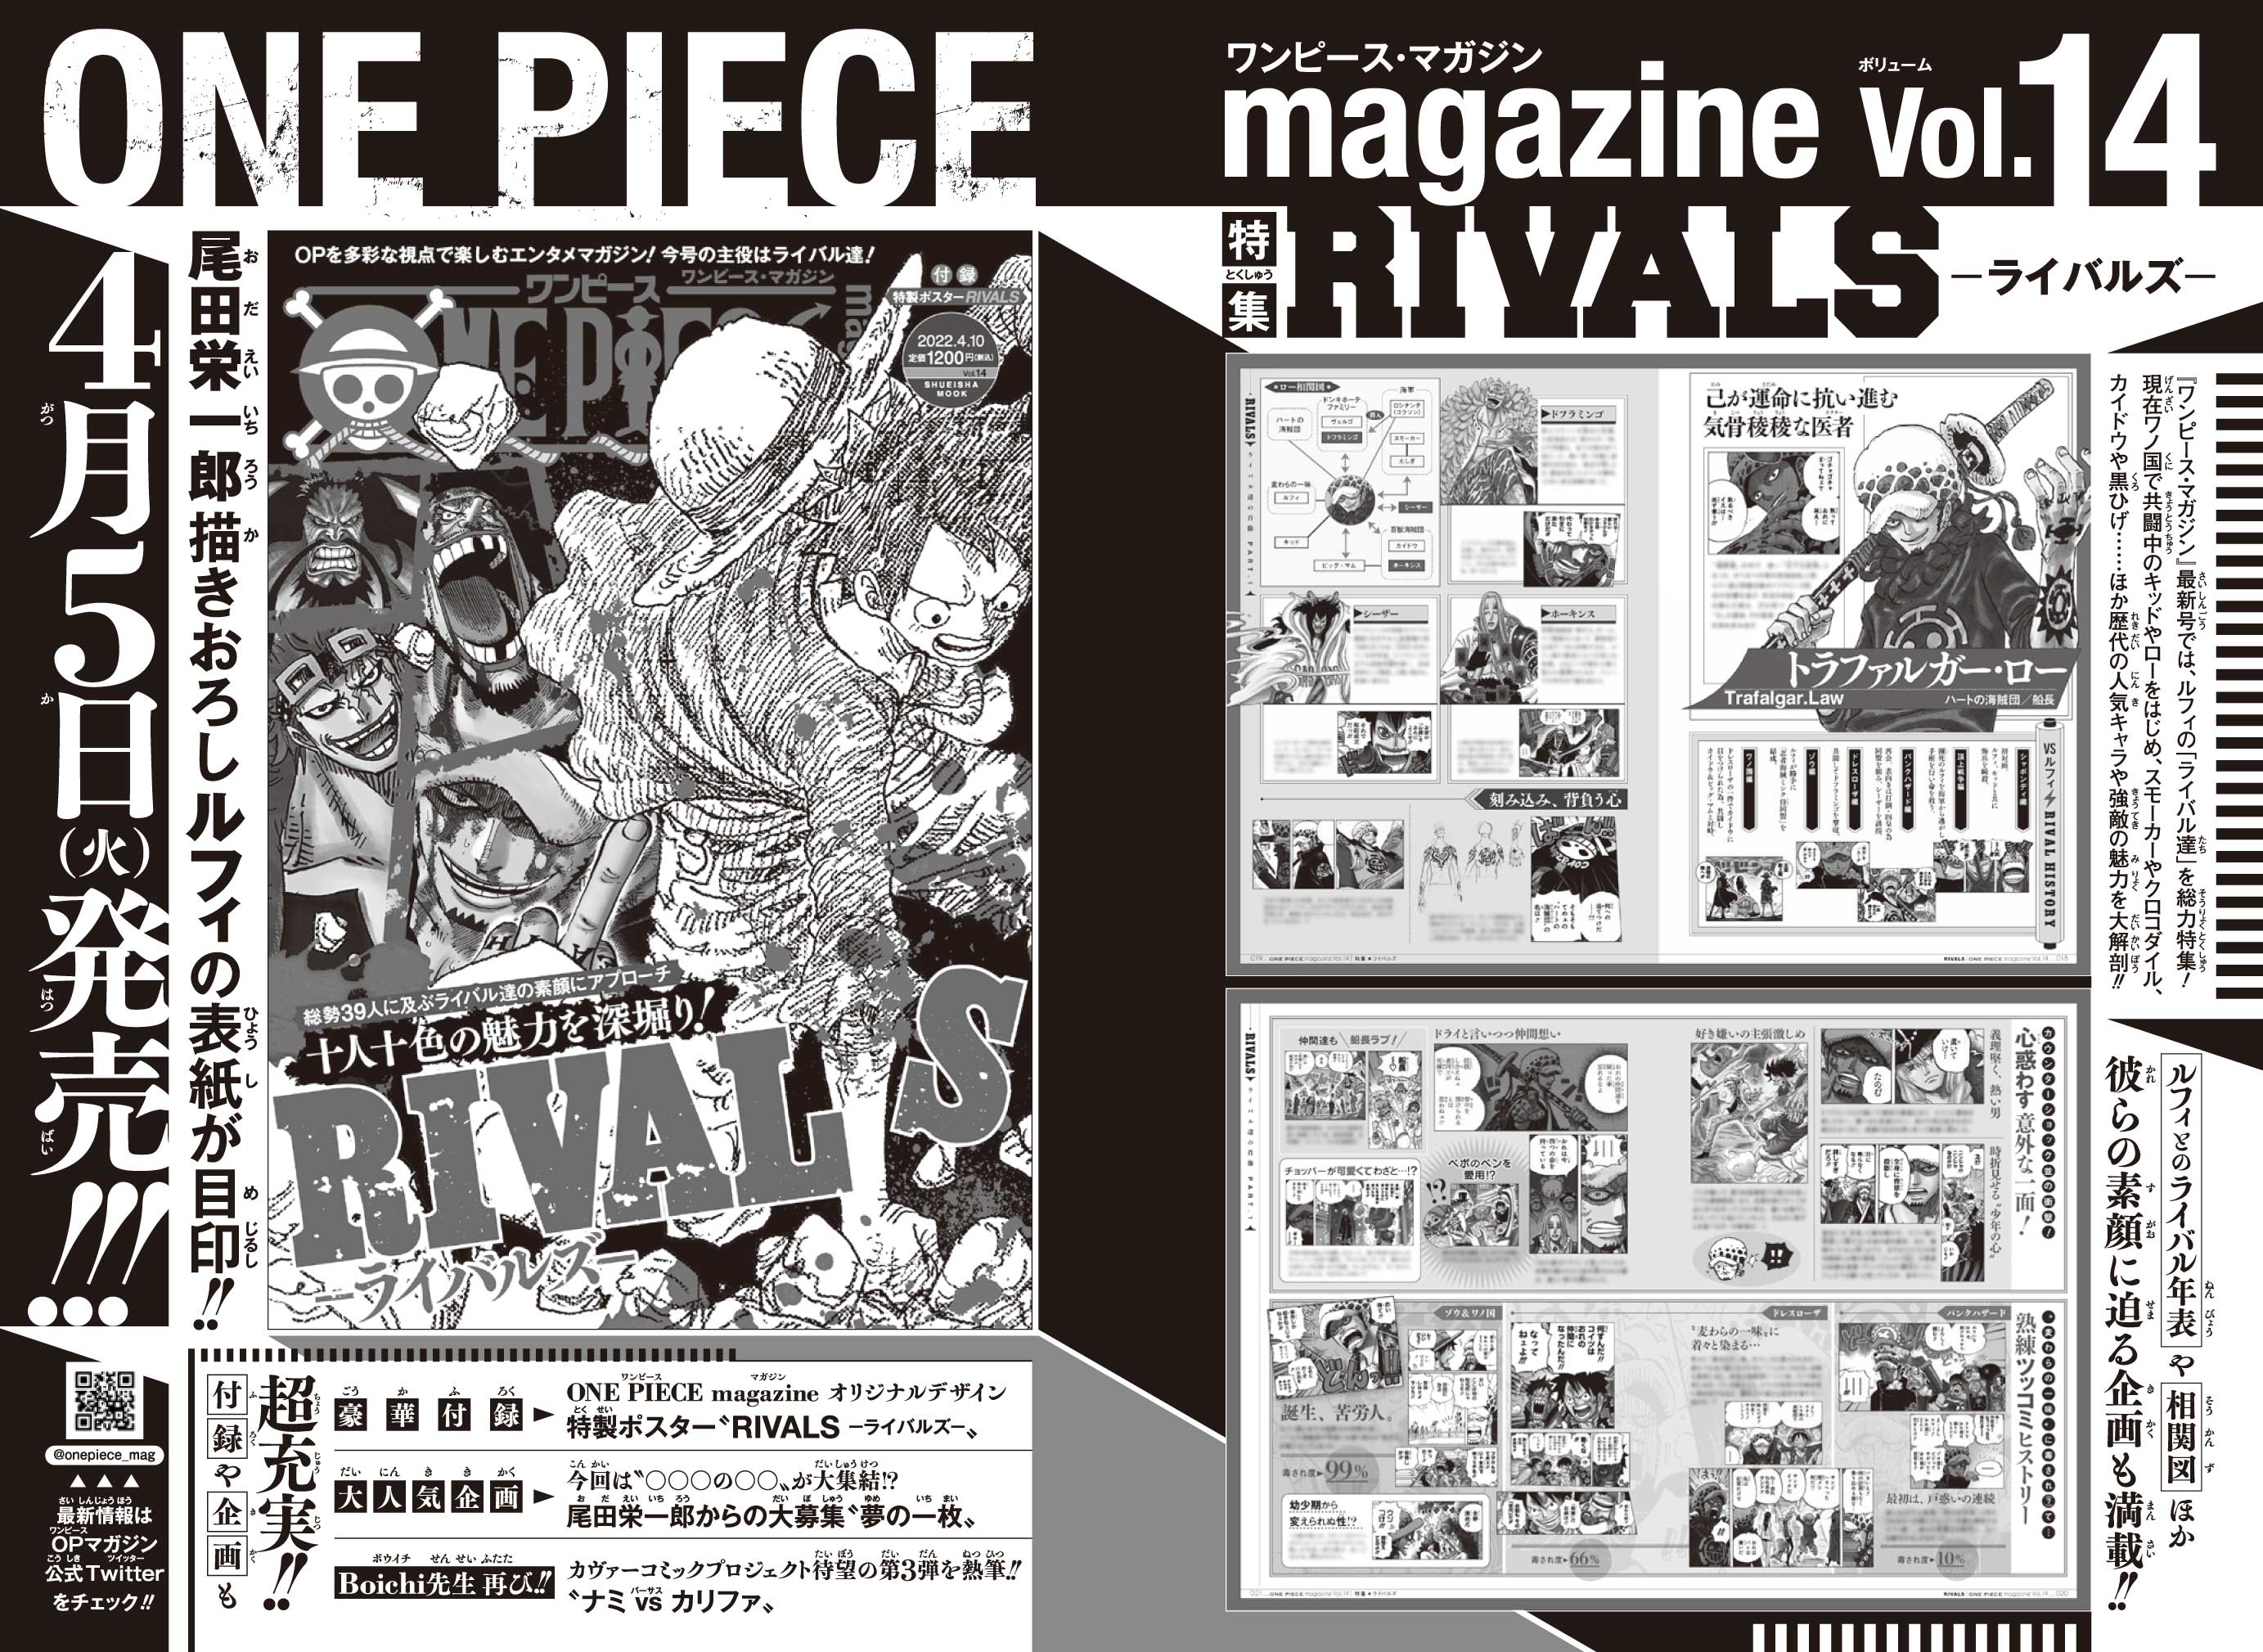 ワンピース マガジン 公式 本日発売のジャンプ16号にも One Piece Magazine Vol 14 の告知を掲載して頂いてます ローのページ 告知記事ではモノクロですが 実際の誌面は4ページすべてフルカラーです 詳しくはコチラで T Co